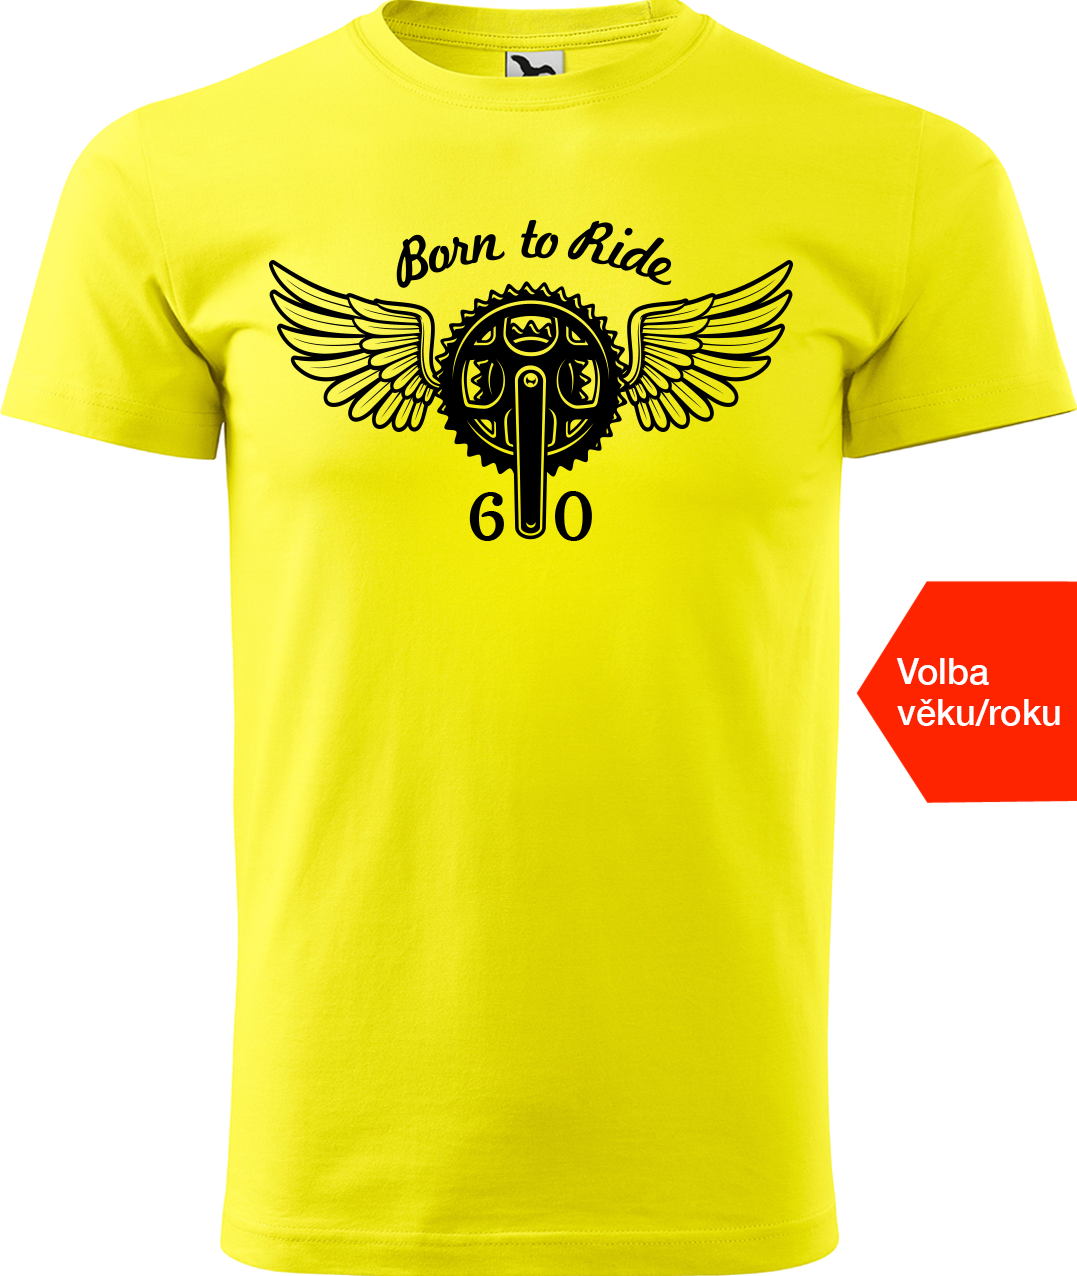 Pánské tričko pro cyklistu s věkem/rokem narození - Born to Ride (převodník) Velikost: S, Barva: Žlutá (04)